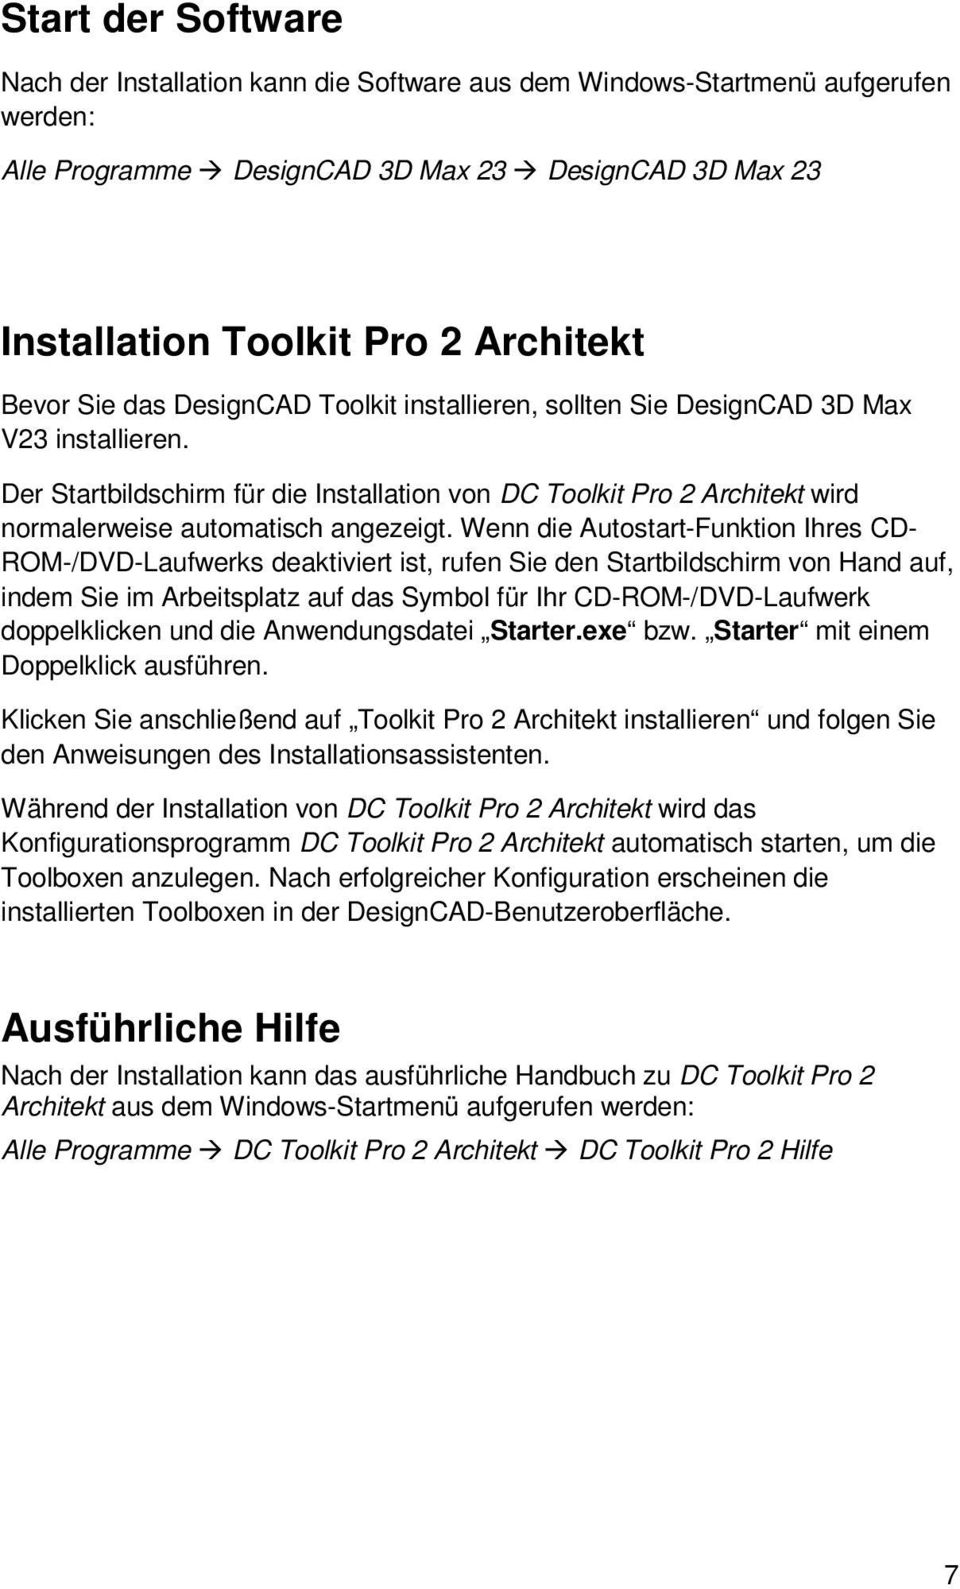 Der Startbildschirm für die Installation von DC Toolkit Pro 2 Architekt wird normalerweise automatisch angezeigt.